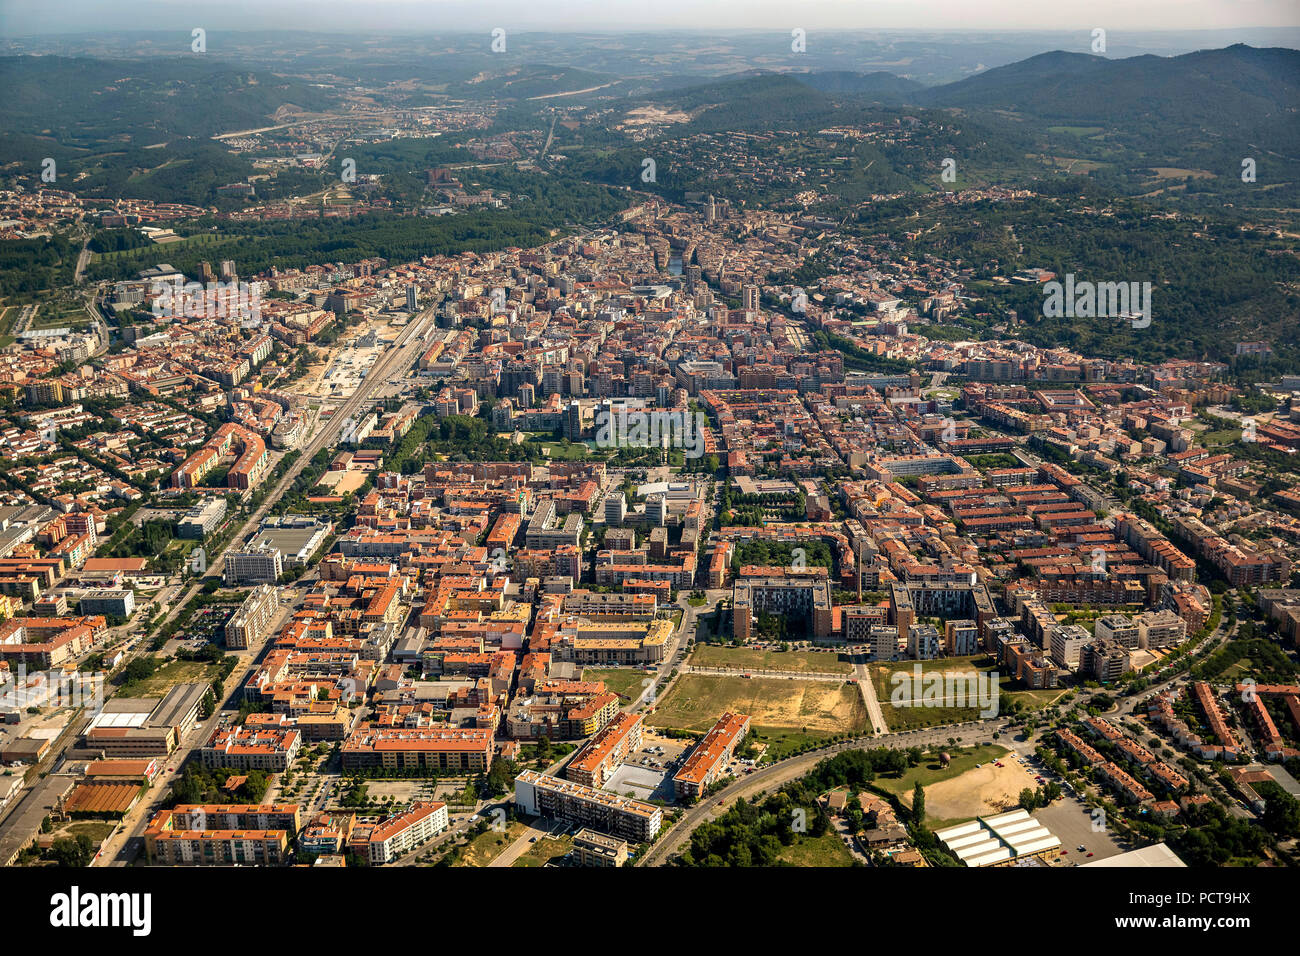 Vista general de la antigua ciudad de Girona, Costa Brava, Girona, Cataluña, España Foto de stock